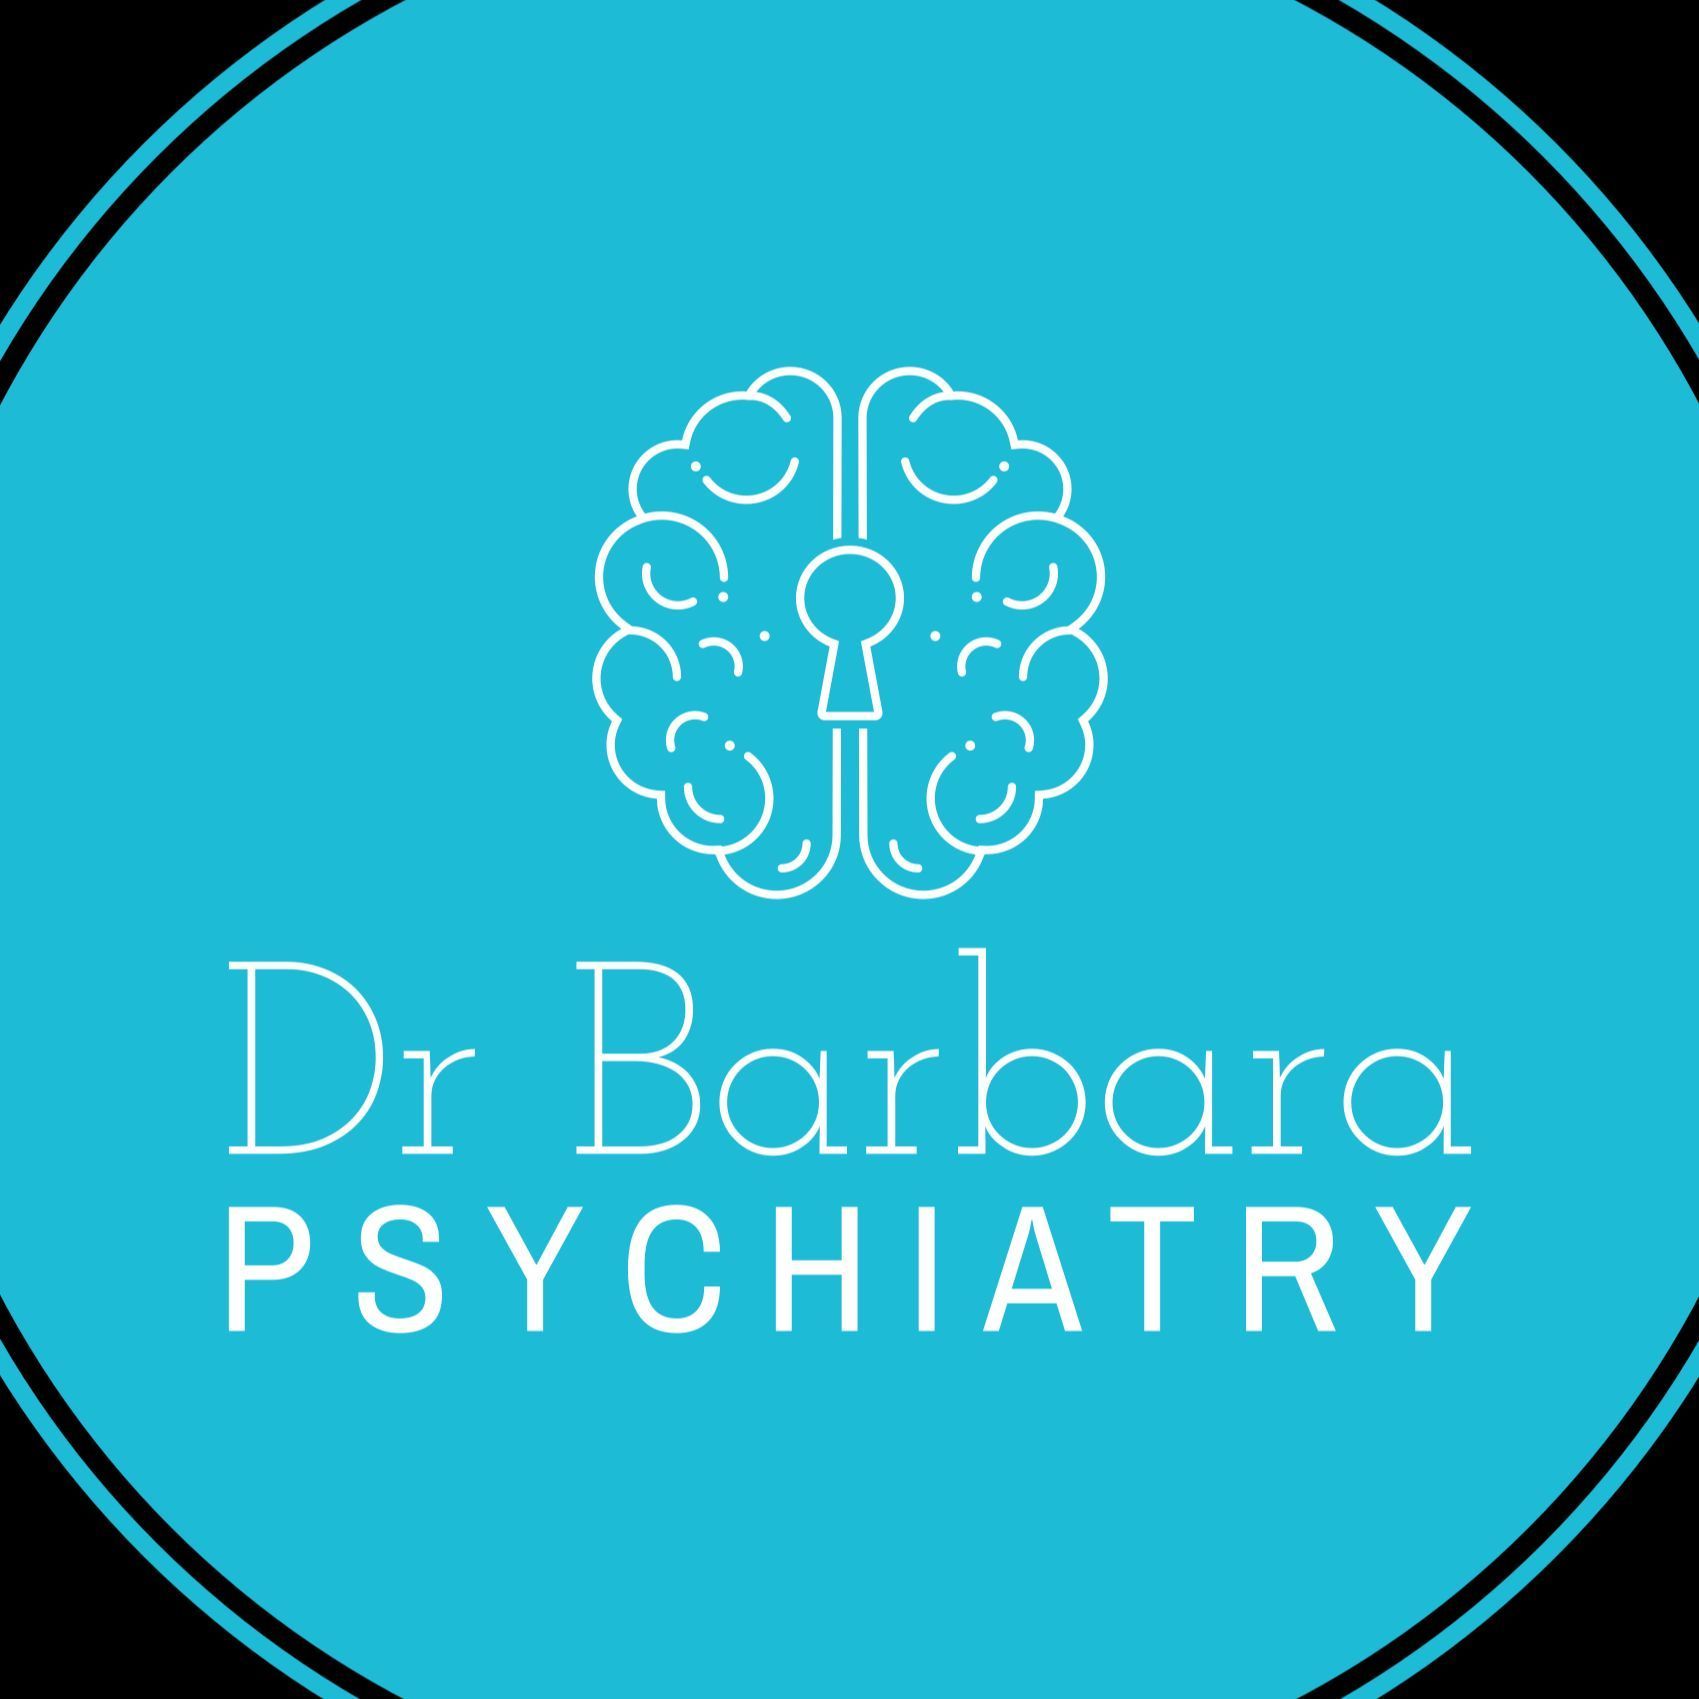 Dr. Barbara Baumgardner, 600 North Bullard Avenue, Suite 10, Goodyear, 85338